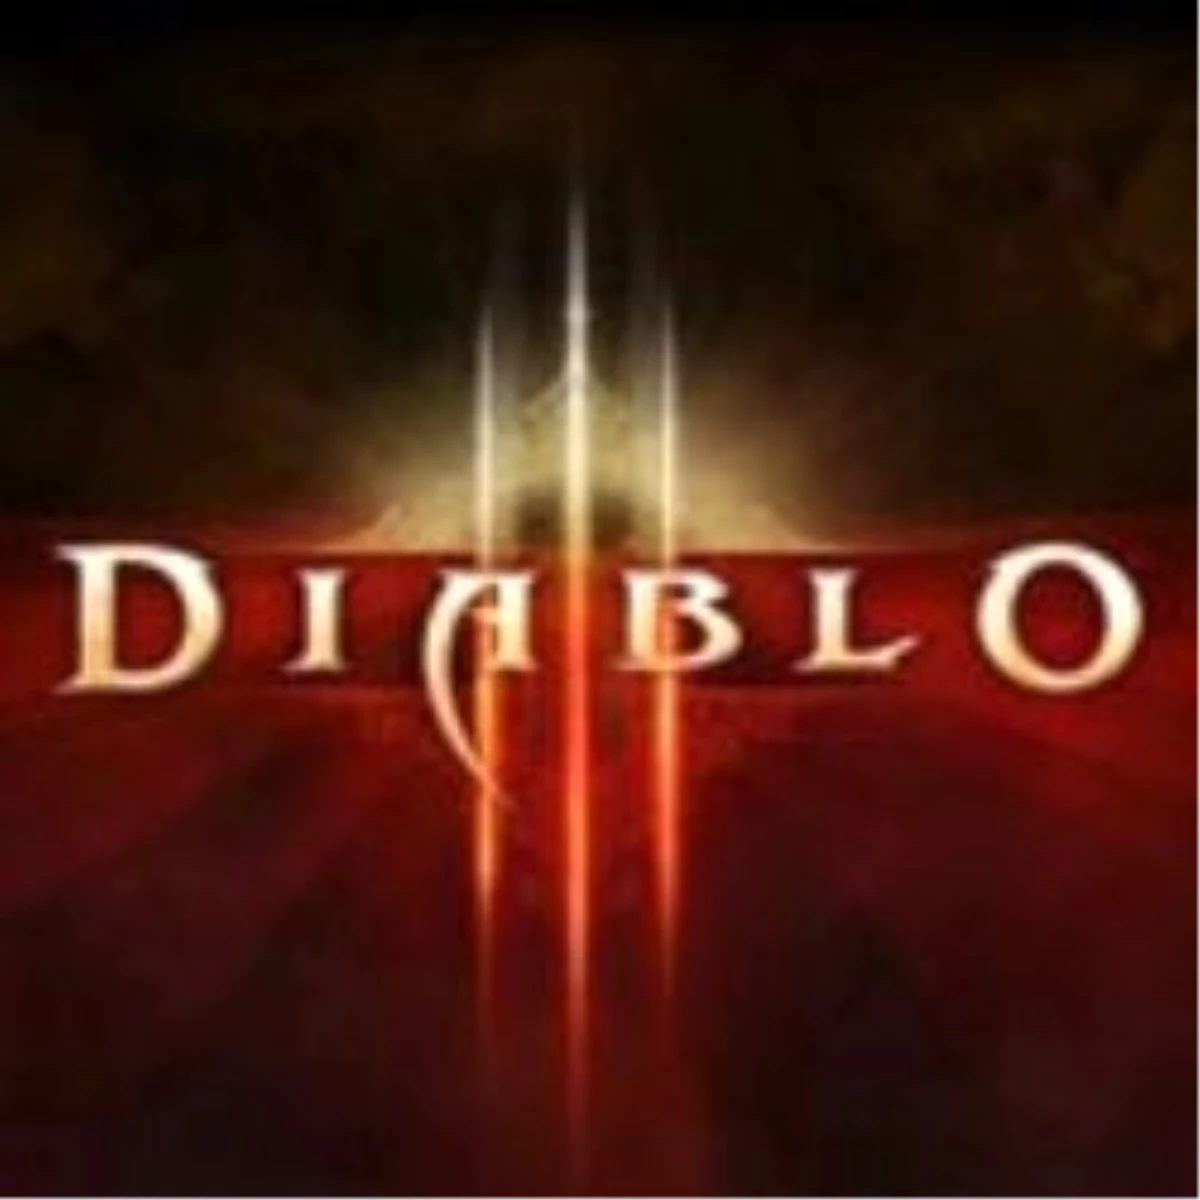 Diablo 3 Siparişi Vermek İster Misiniz?